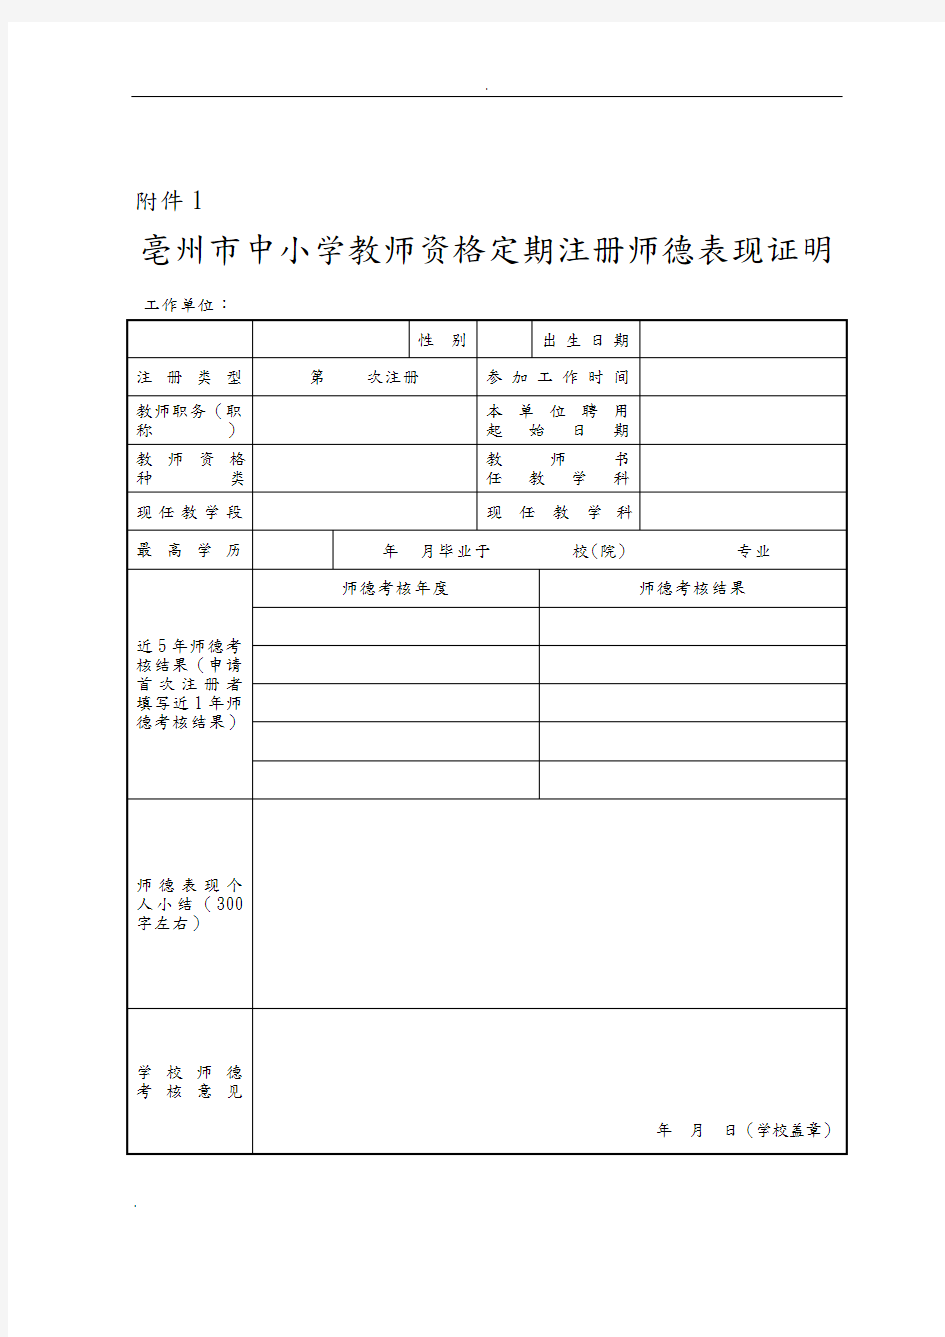 亳州市中小学教师资格定期注册师德表现证明 - 副本